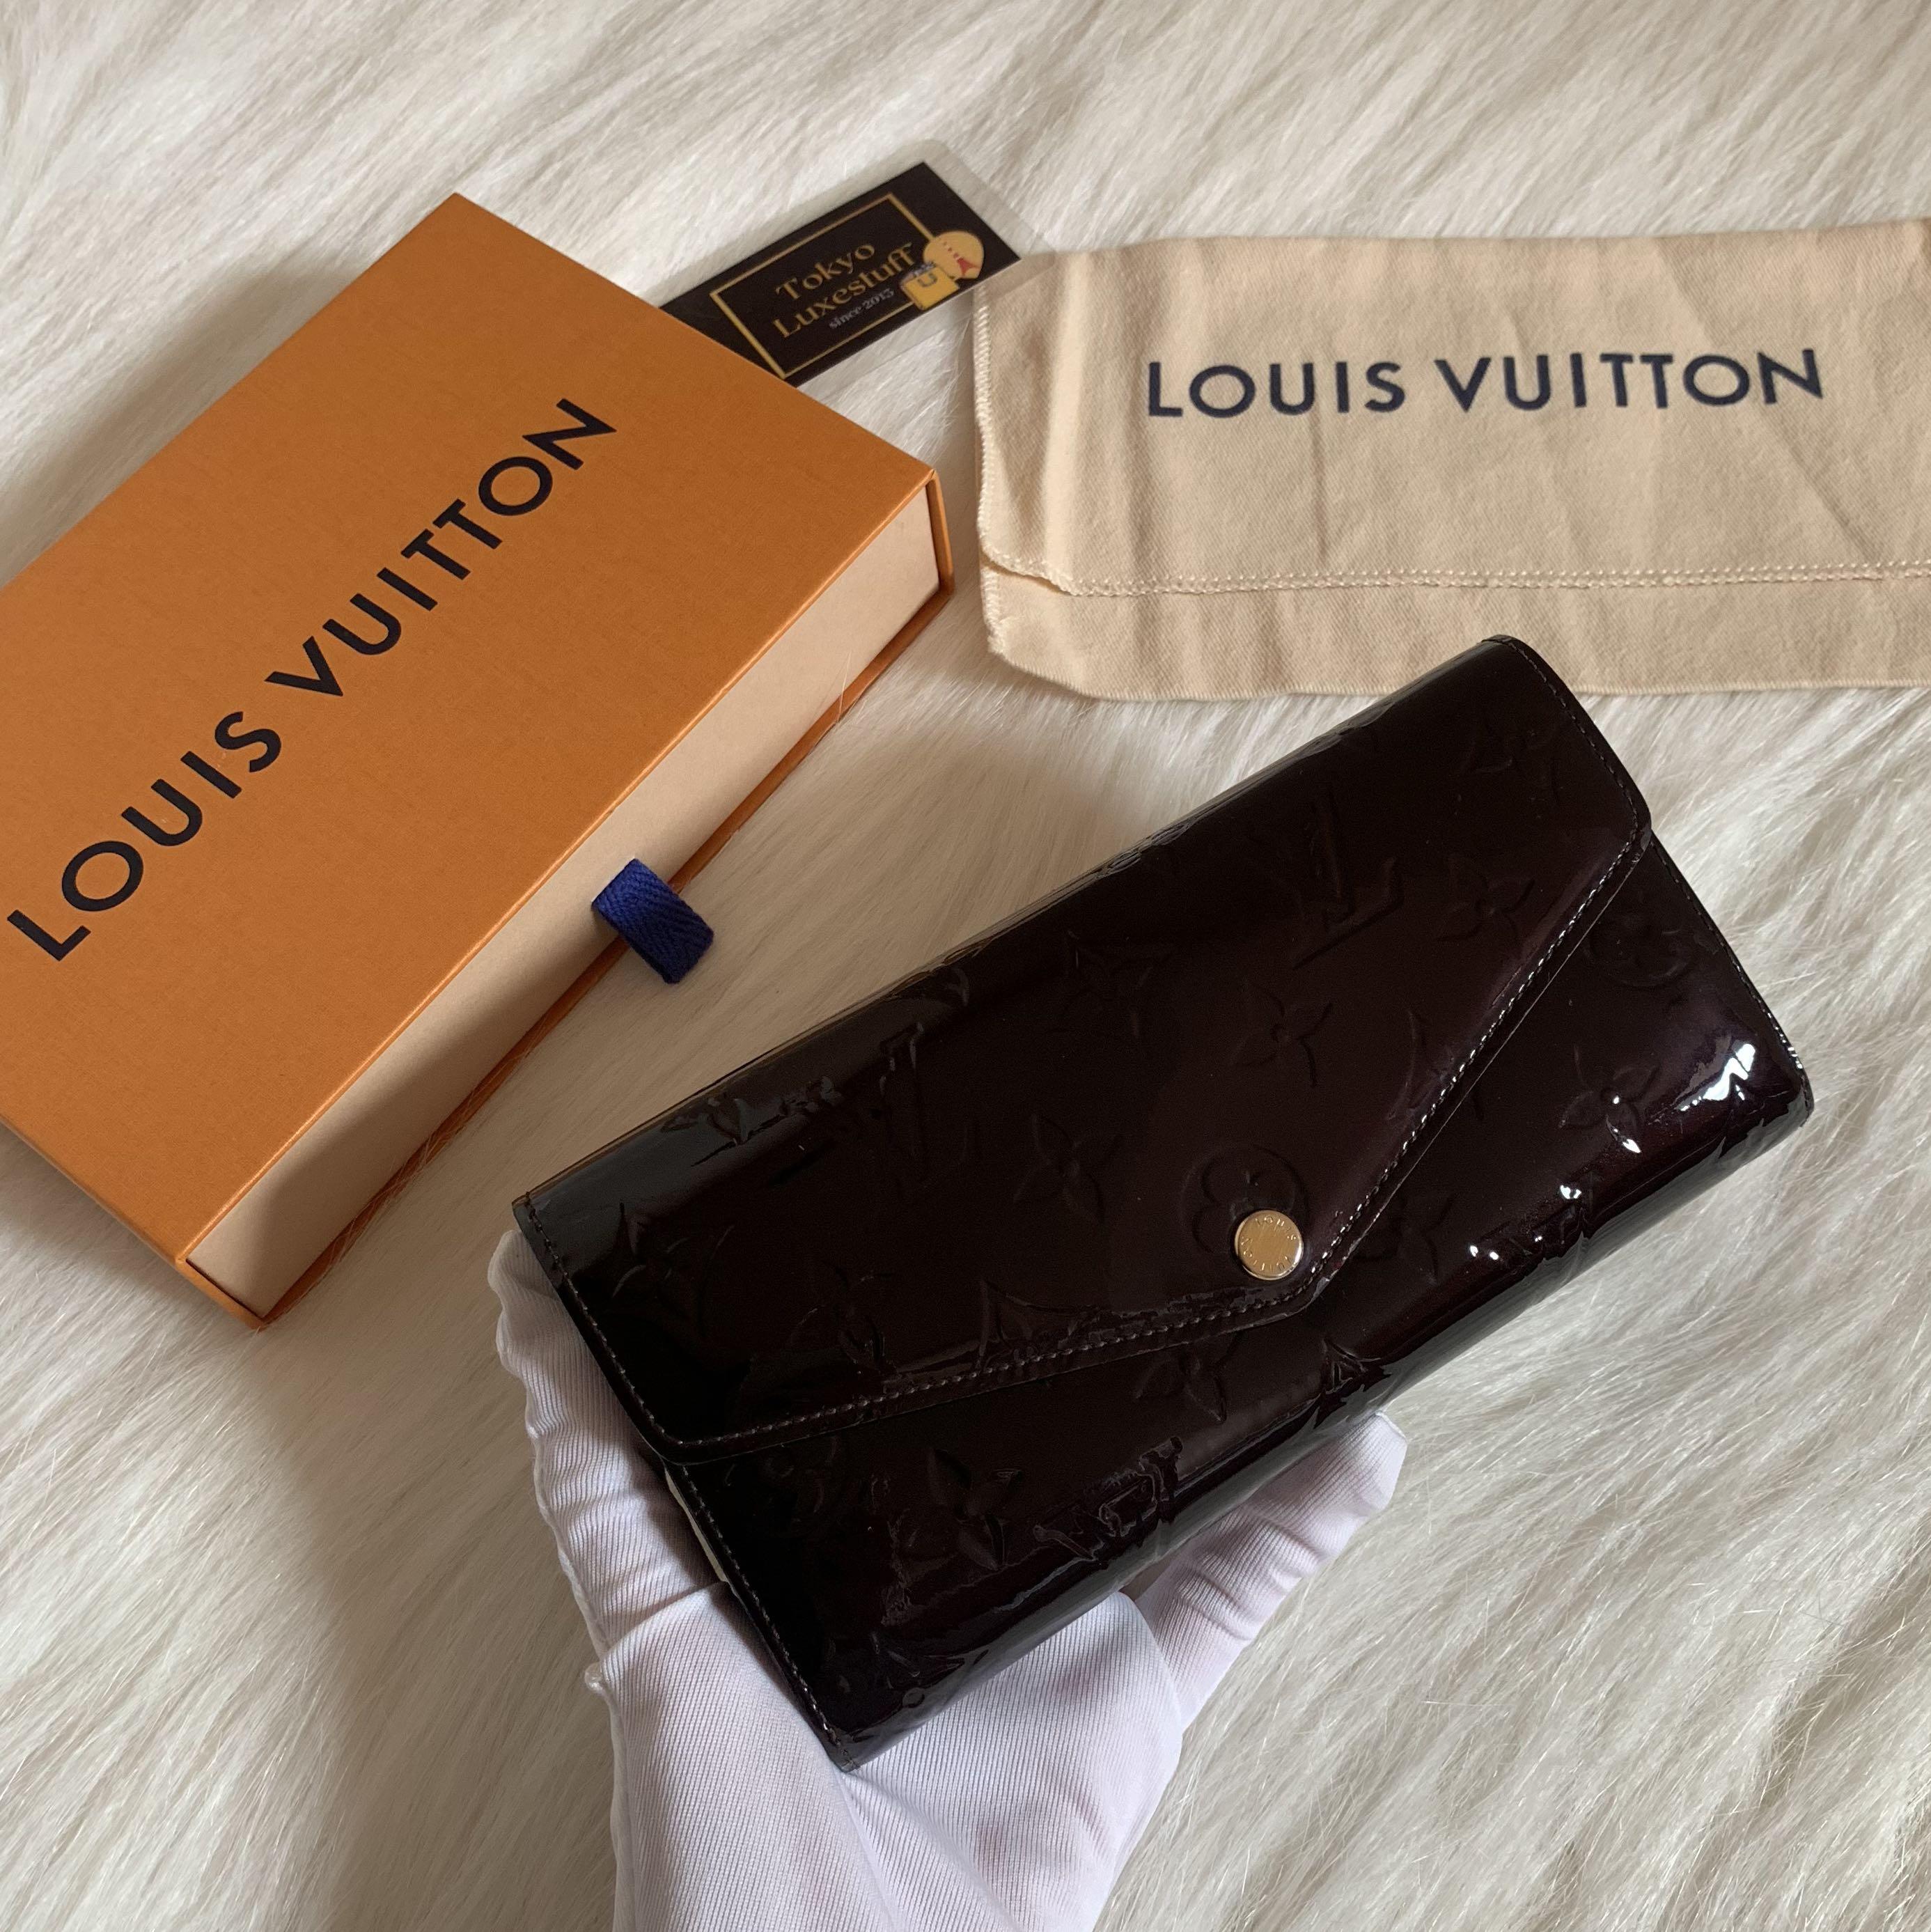 LOUIS VUITTON Portefeuille Double V long wallet Purse M64319